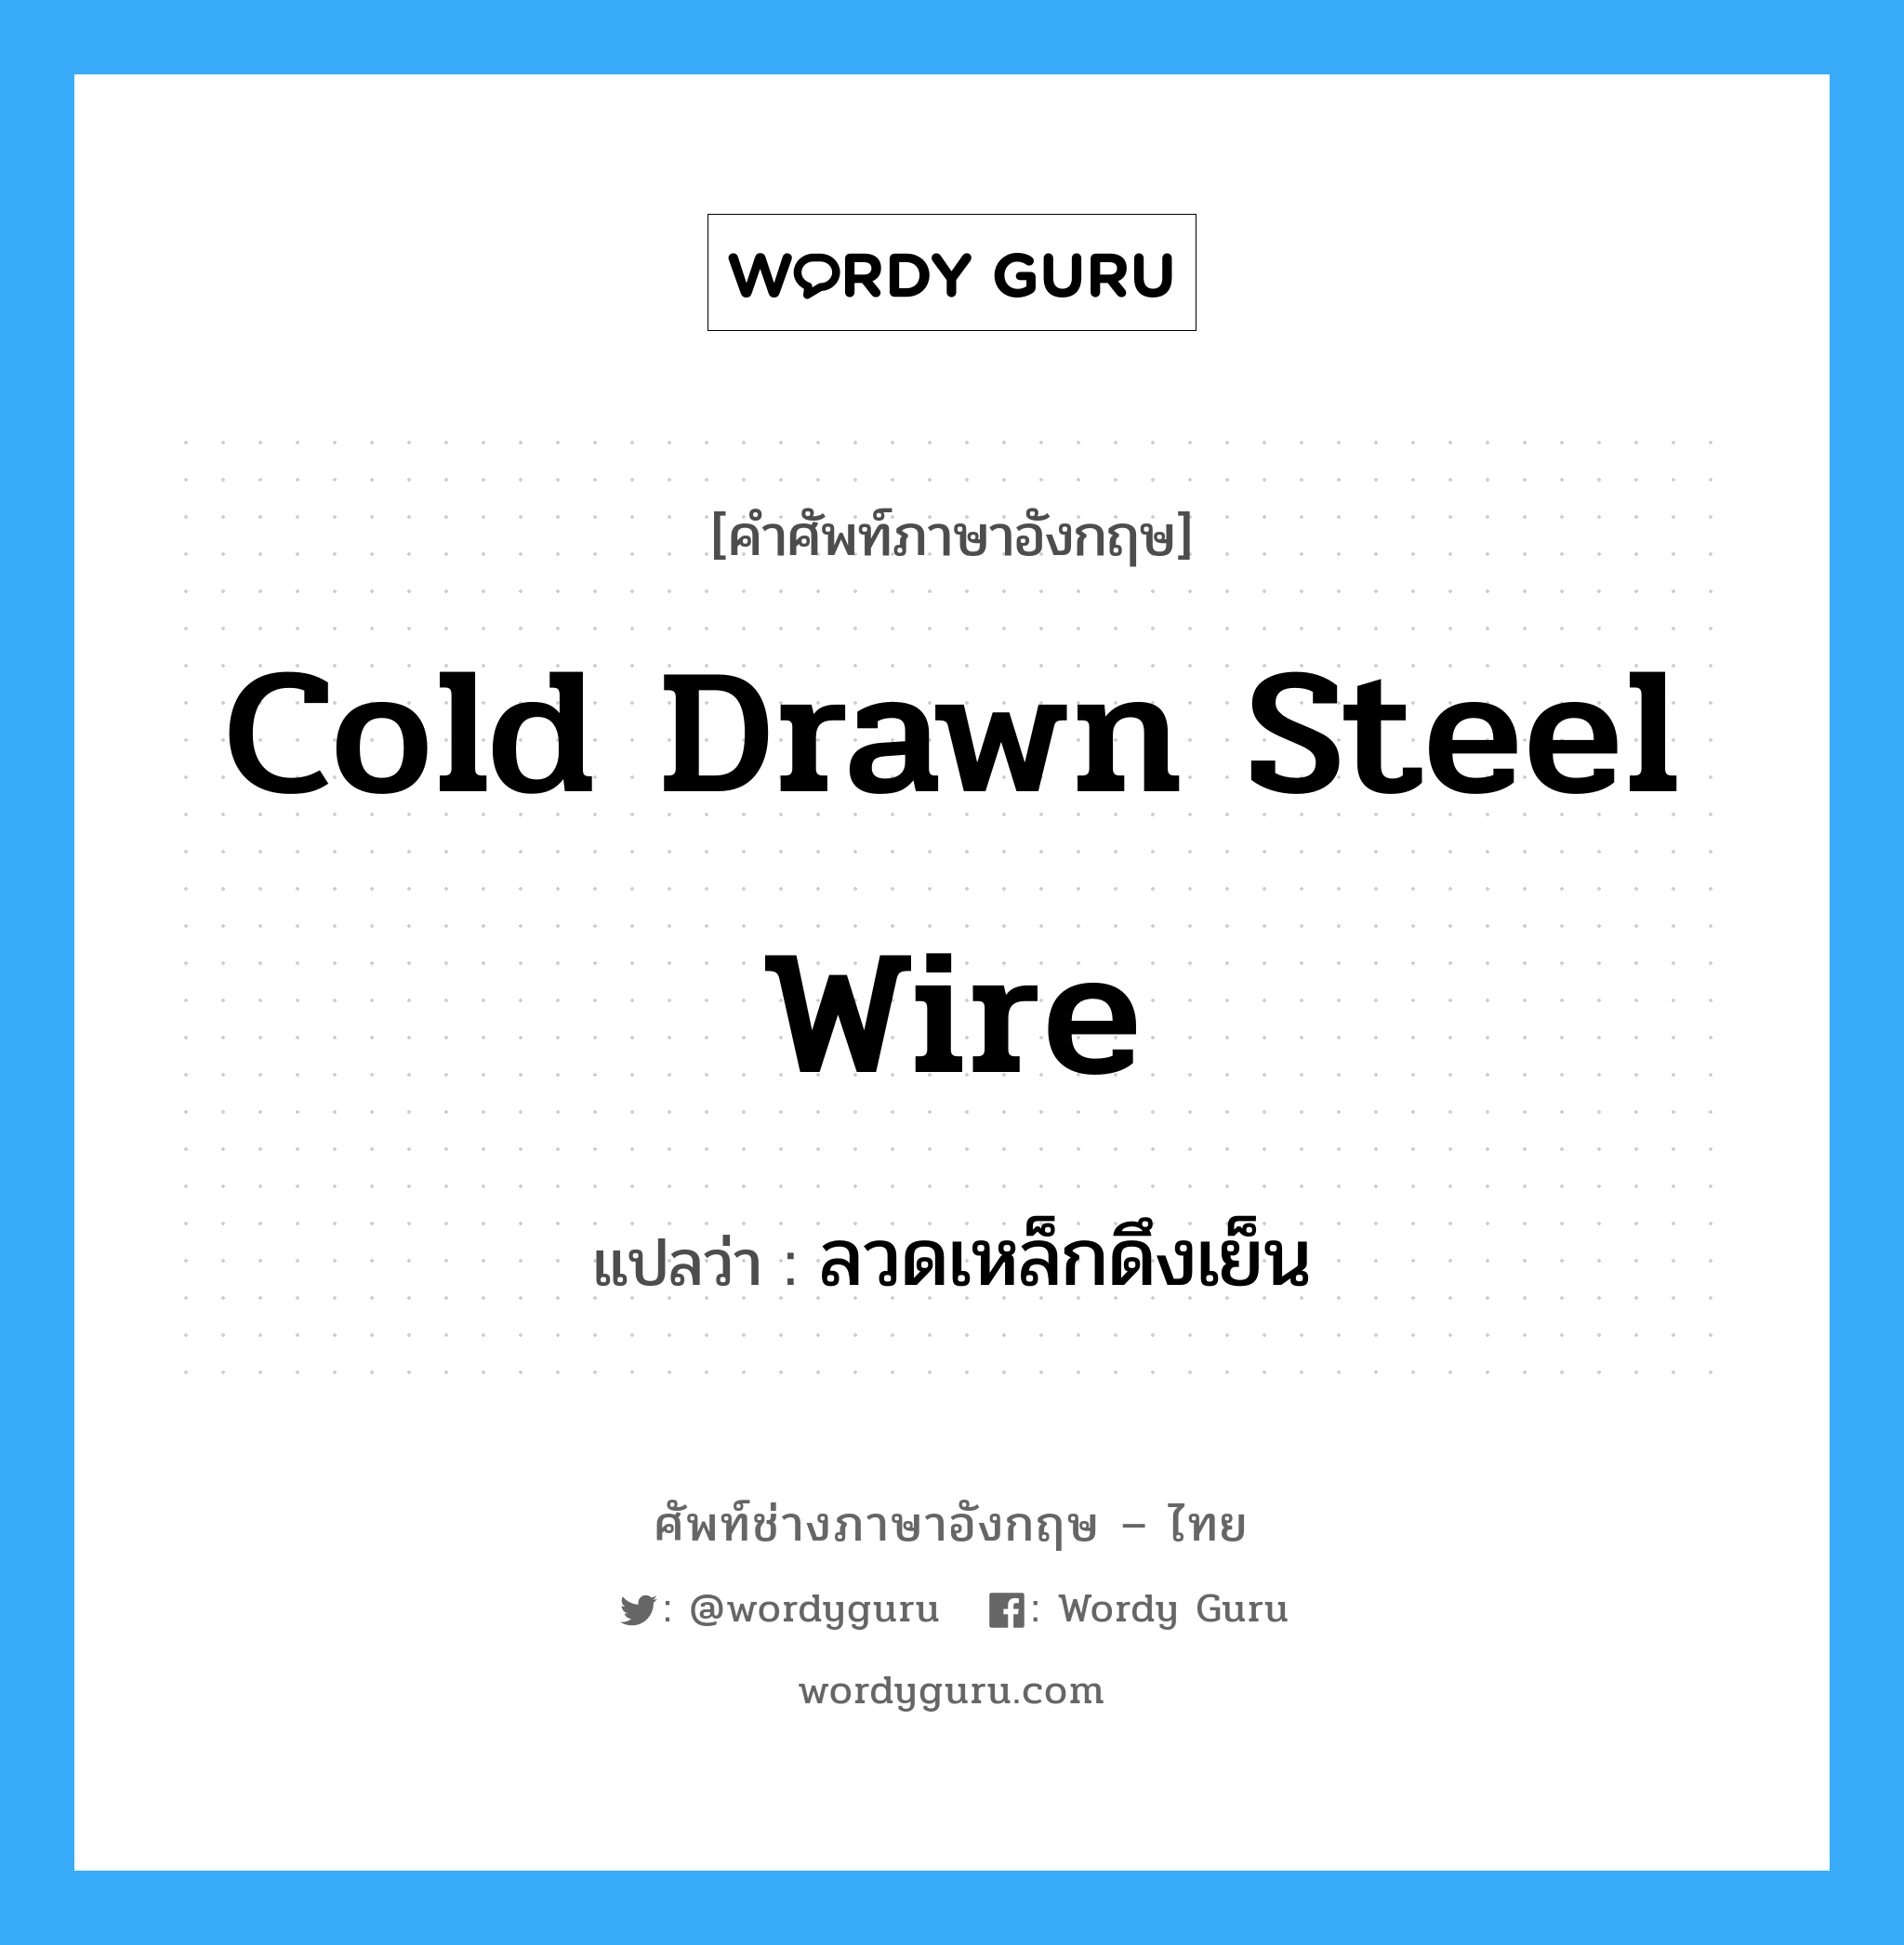 ลวดเหล็กดึงเย็น ภาษาอังกฤษ?, คำศัพท์ช่างภาษาอังกฤษ - ไทย ลวดเหล็กดึงเย็น คำศัพท์ภาษาอังกฤษ ลวดเหล็กดึงเย็น แปลว่า cold drawn steel wire